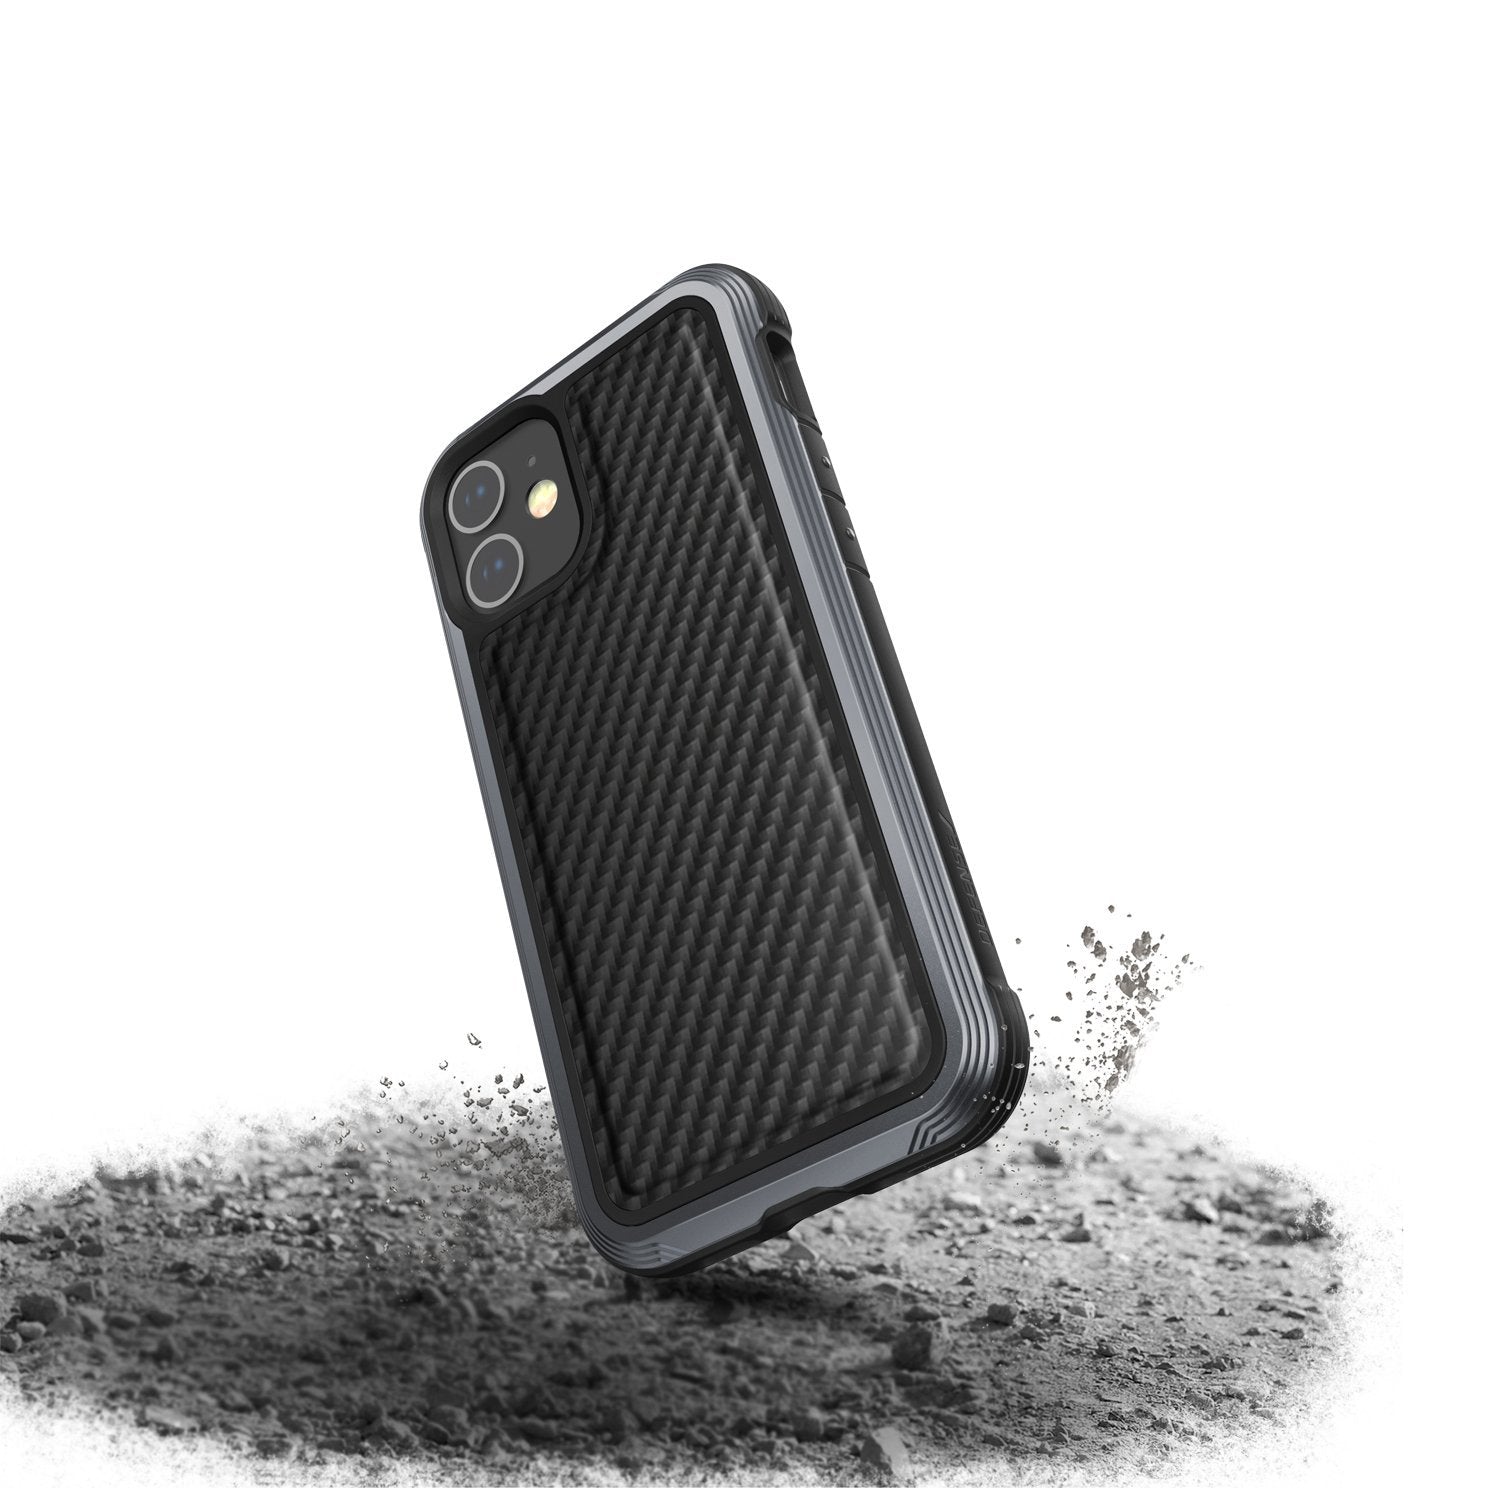 X-Doria Defense Raptic Lux Case for iPhone 12 mini 5.4"(2020), Black Carbon Fiber iPhone 12 X-Doria 